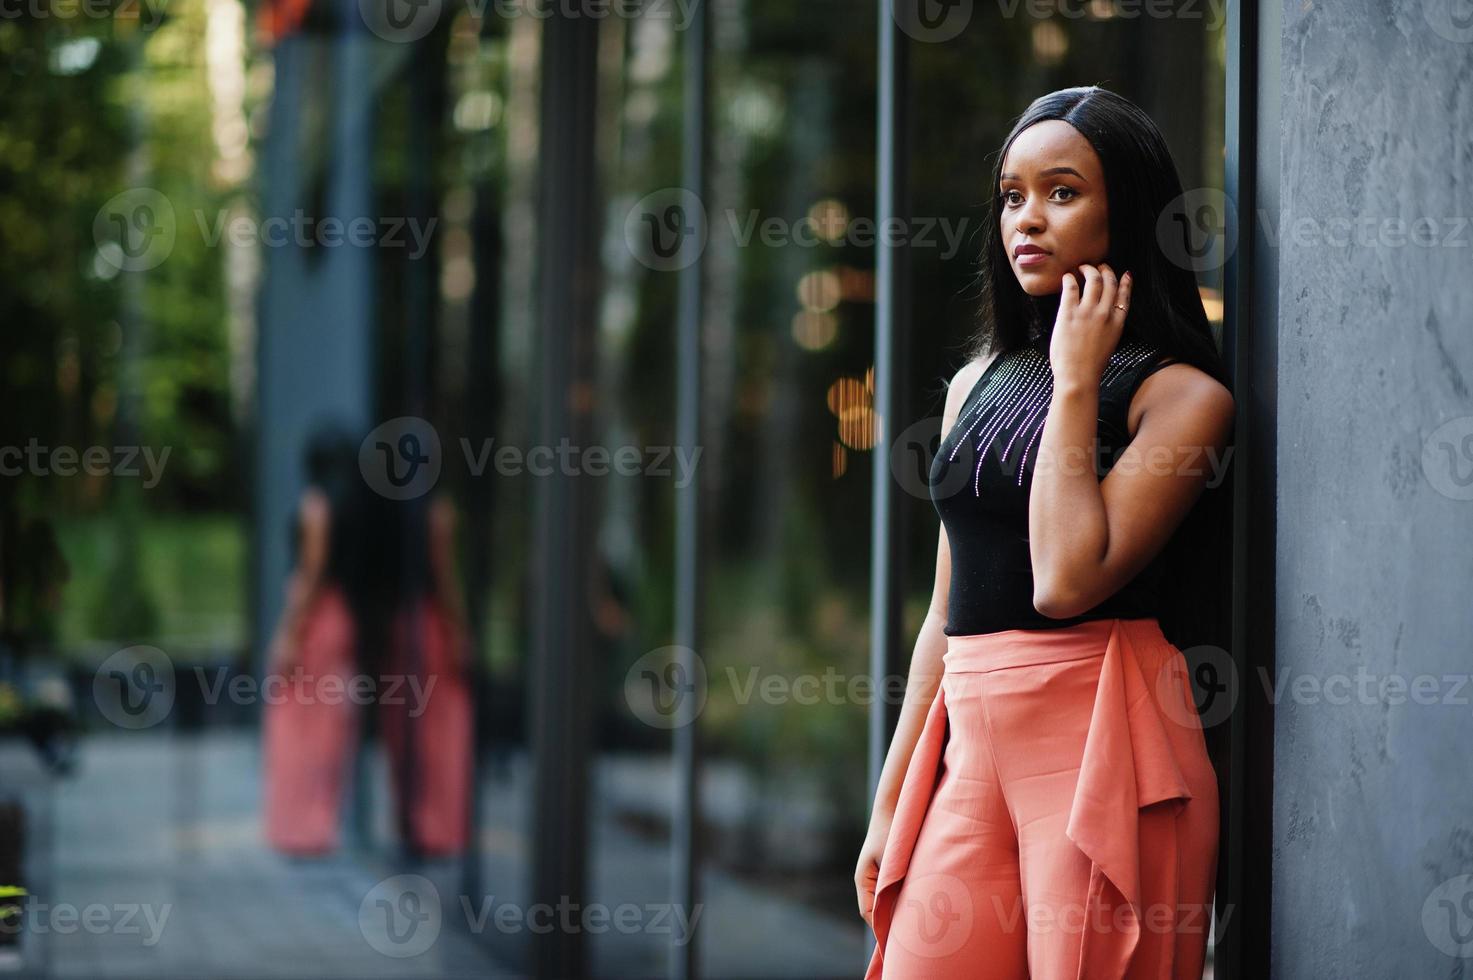 mujer afroamericana de moda en pantalones de melocotón y blusa negra posan al aire libre. foto